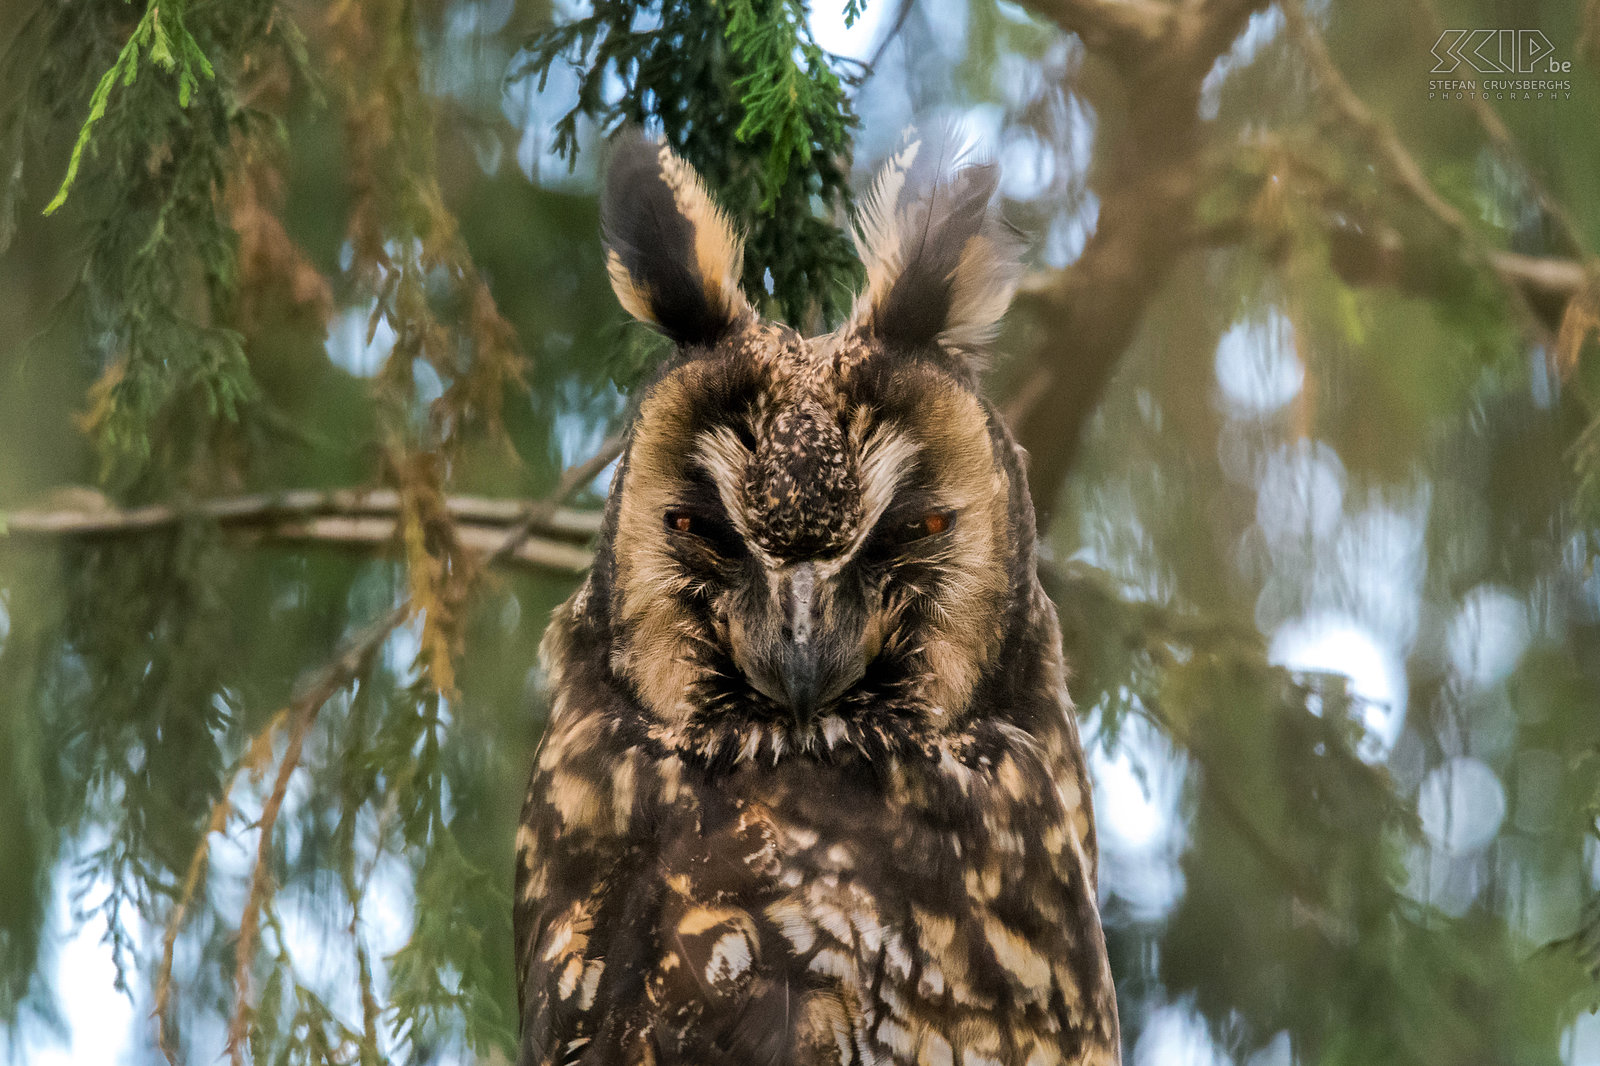 Bale Mountains - Dinsho - Ethiopische ransuil close-up De Ethiopische ransuil (Abyssinian owl, Asio abyssinicus abyssinicus) is een middelgrote nachtuil die voorkomt in de hooglanden (tot 3900m) van Ethiopië en noord Kenia. Stefan Cruysberghs